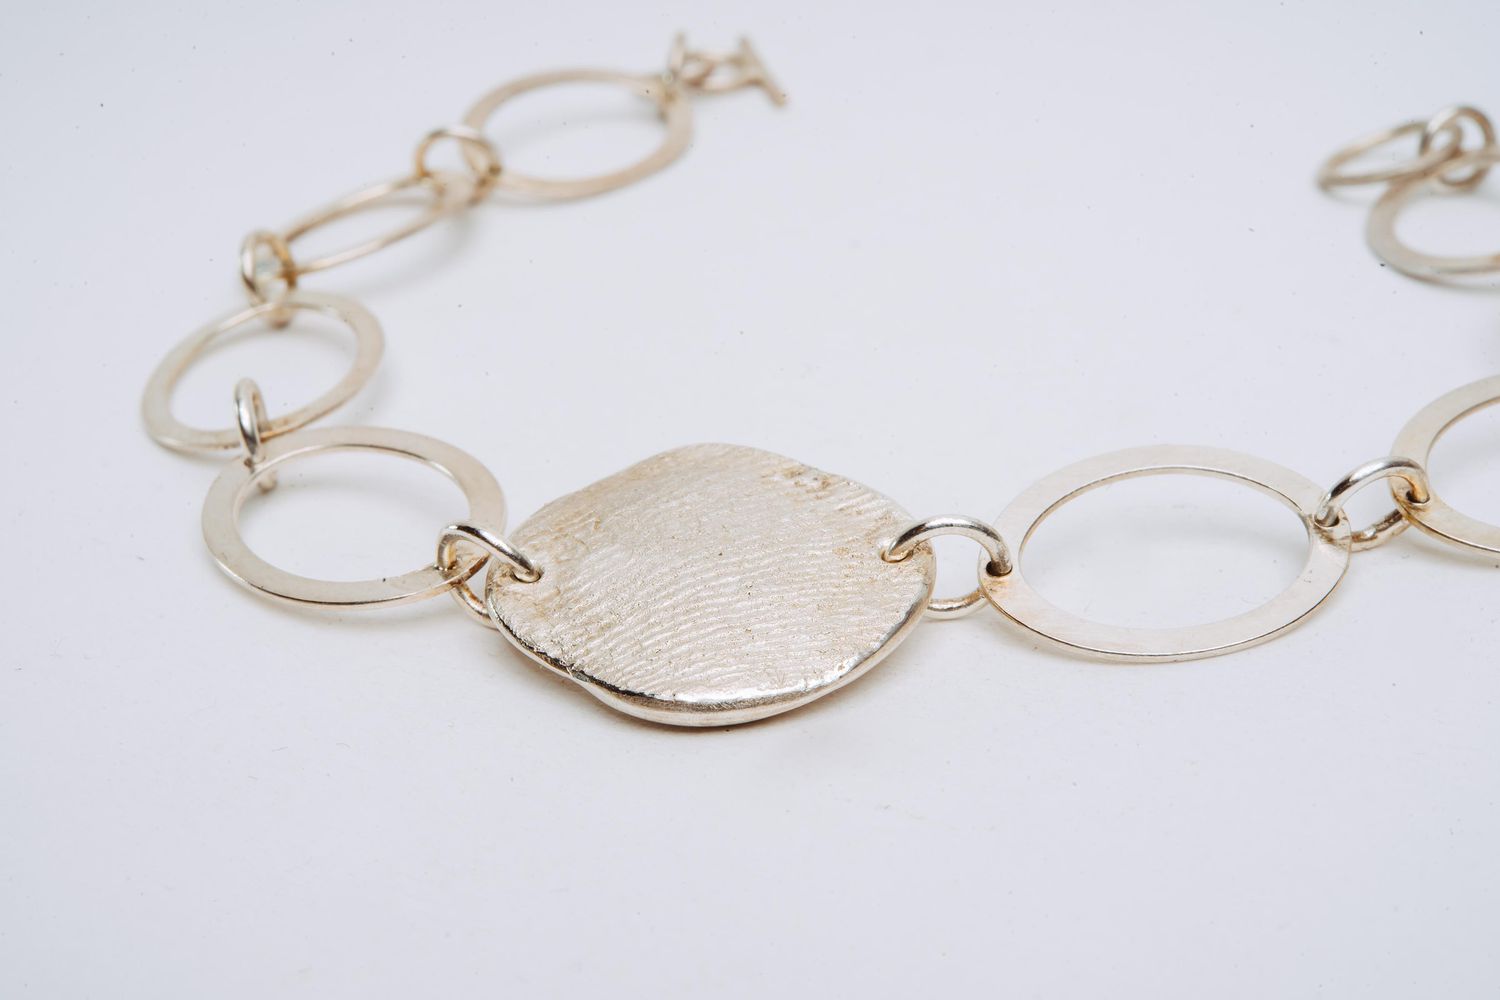 Colliers (Halskette) aus 925er Silber mit schlichten Ringen und Mittelstück (Fingerabdruck z.B. des Partners)